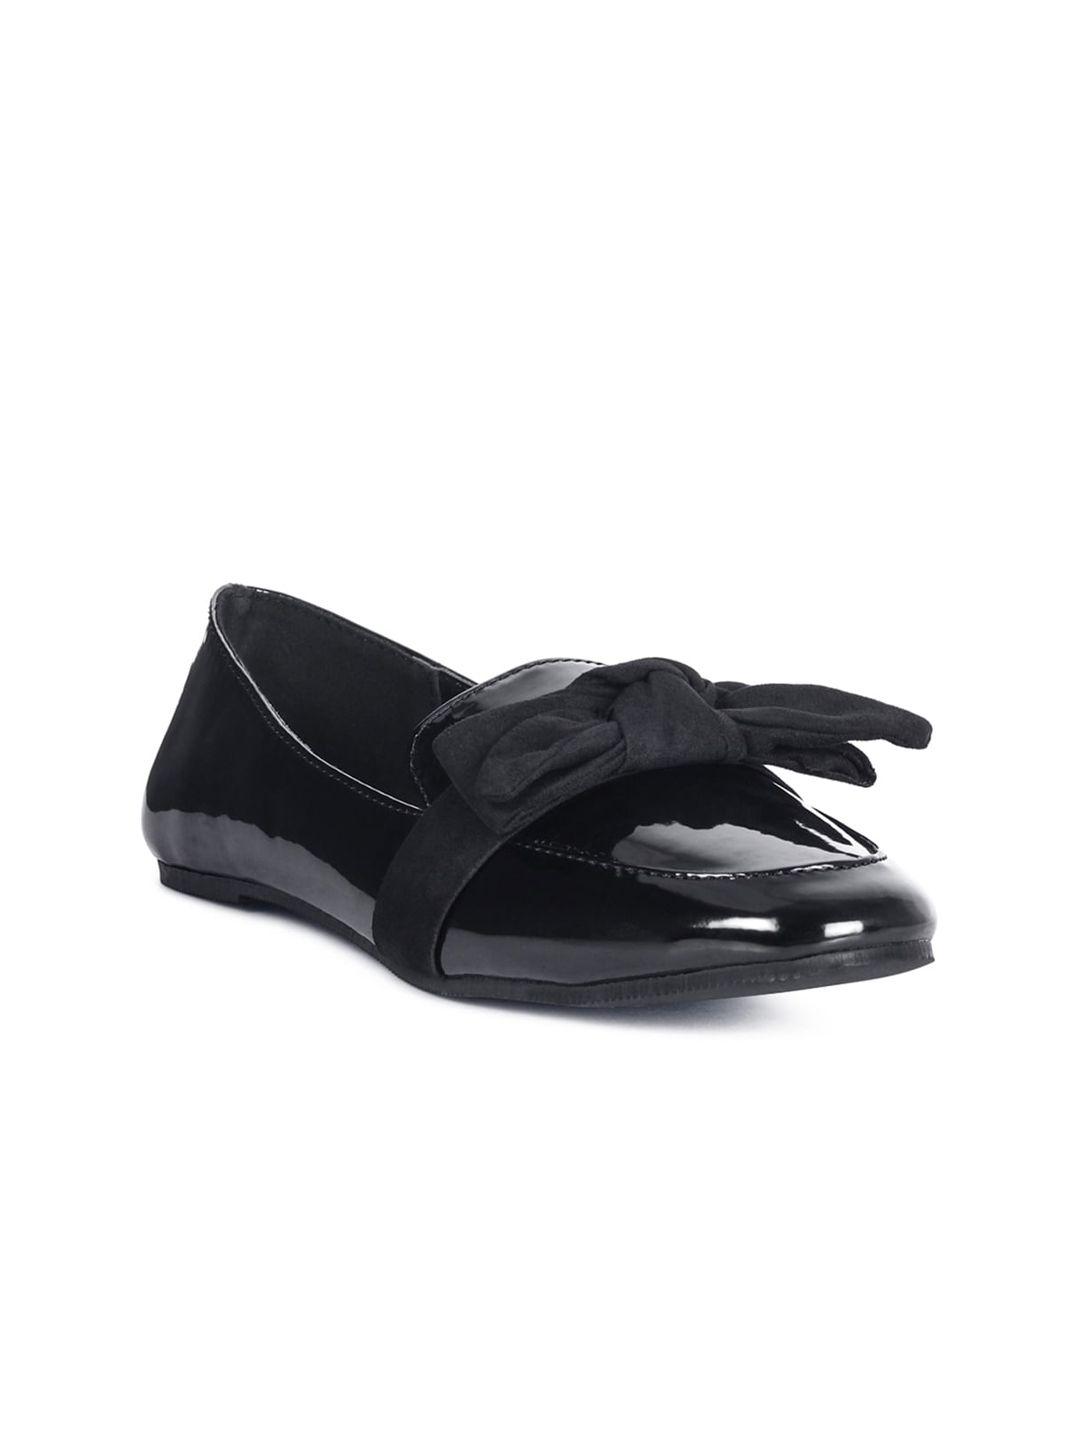 london-rag-women-black-slip-on-loafers